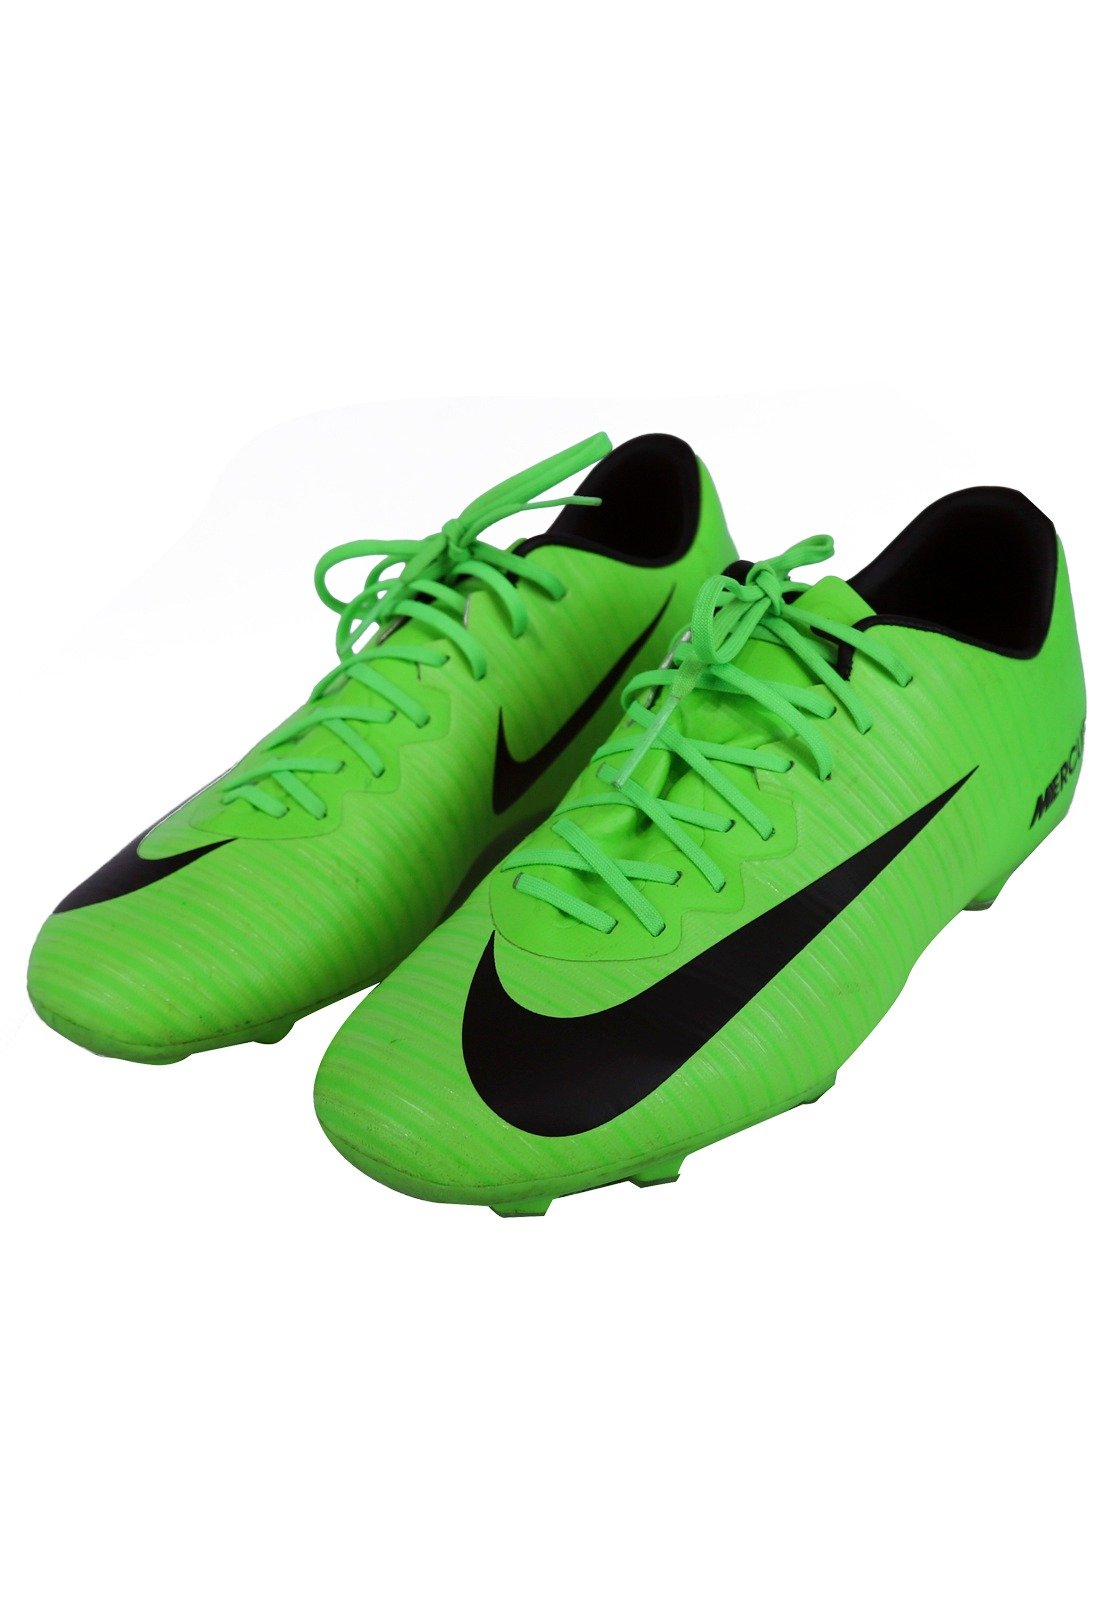 Featured image of post Chuteira Da Nike Verde O modelo de botinha apresenta um esquema monocrom tico com um verde lim o bastante acentuado